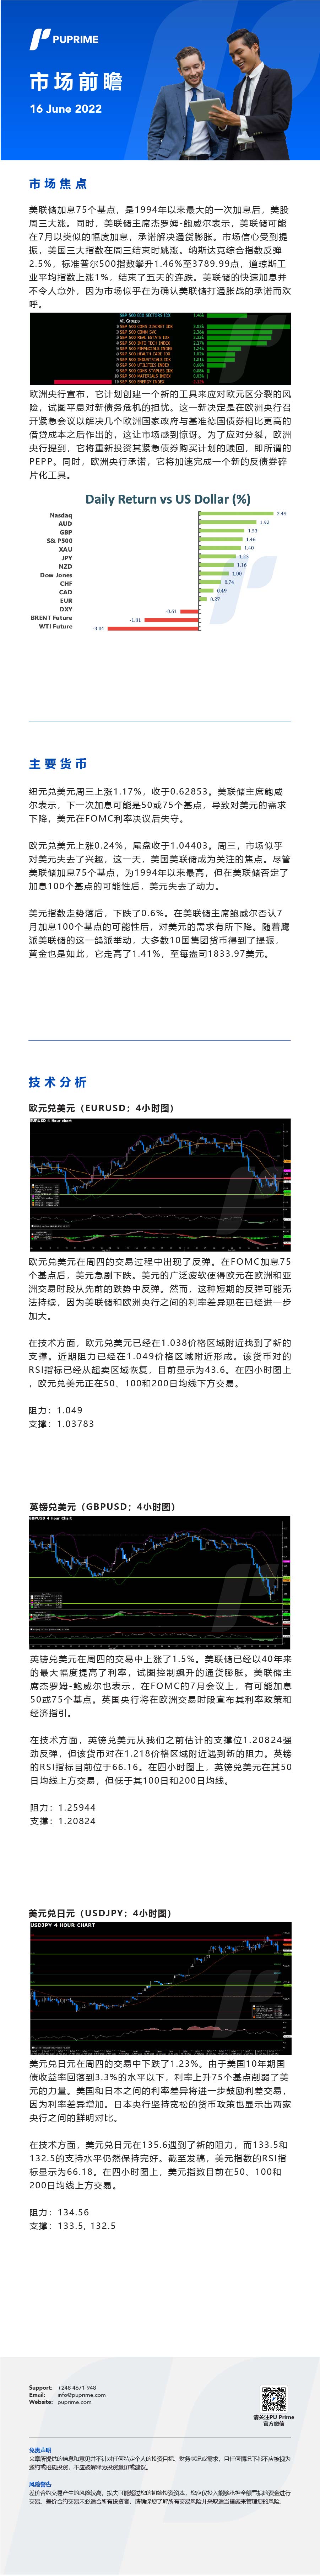 16062022 Daily Market Analysis__CHN.jpg